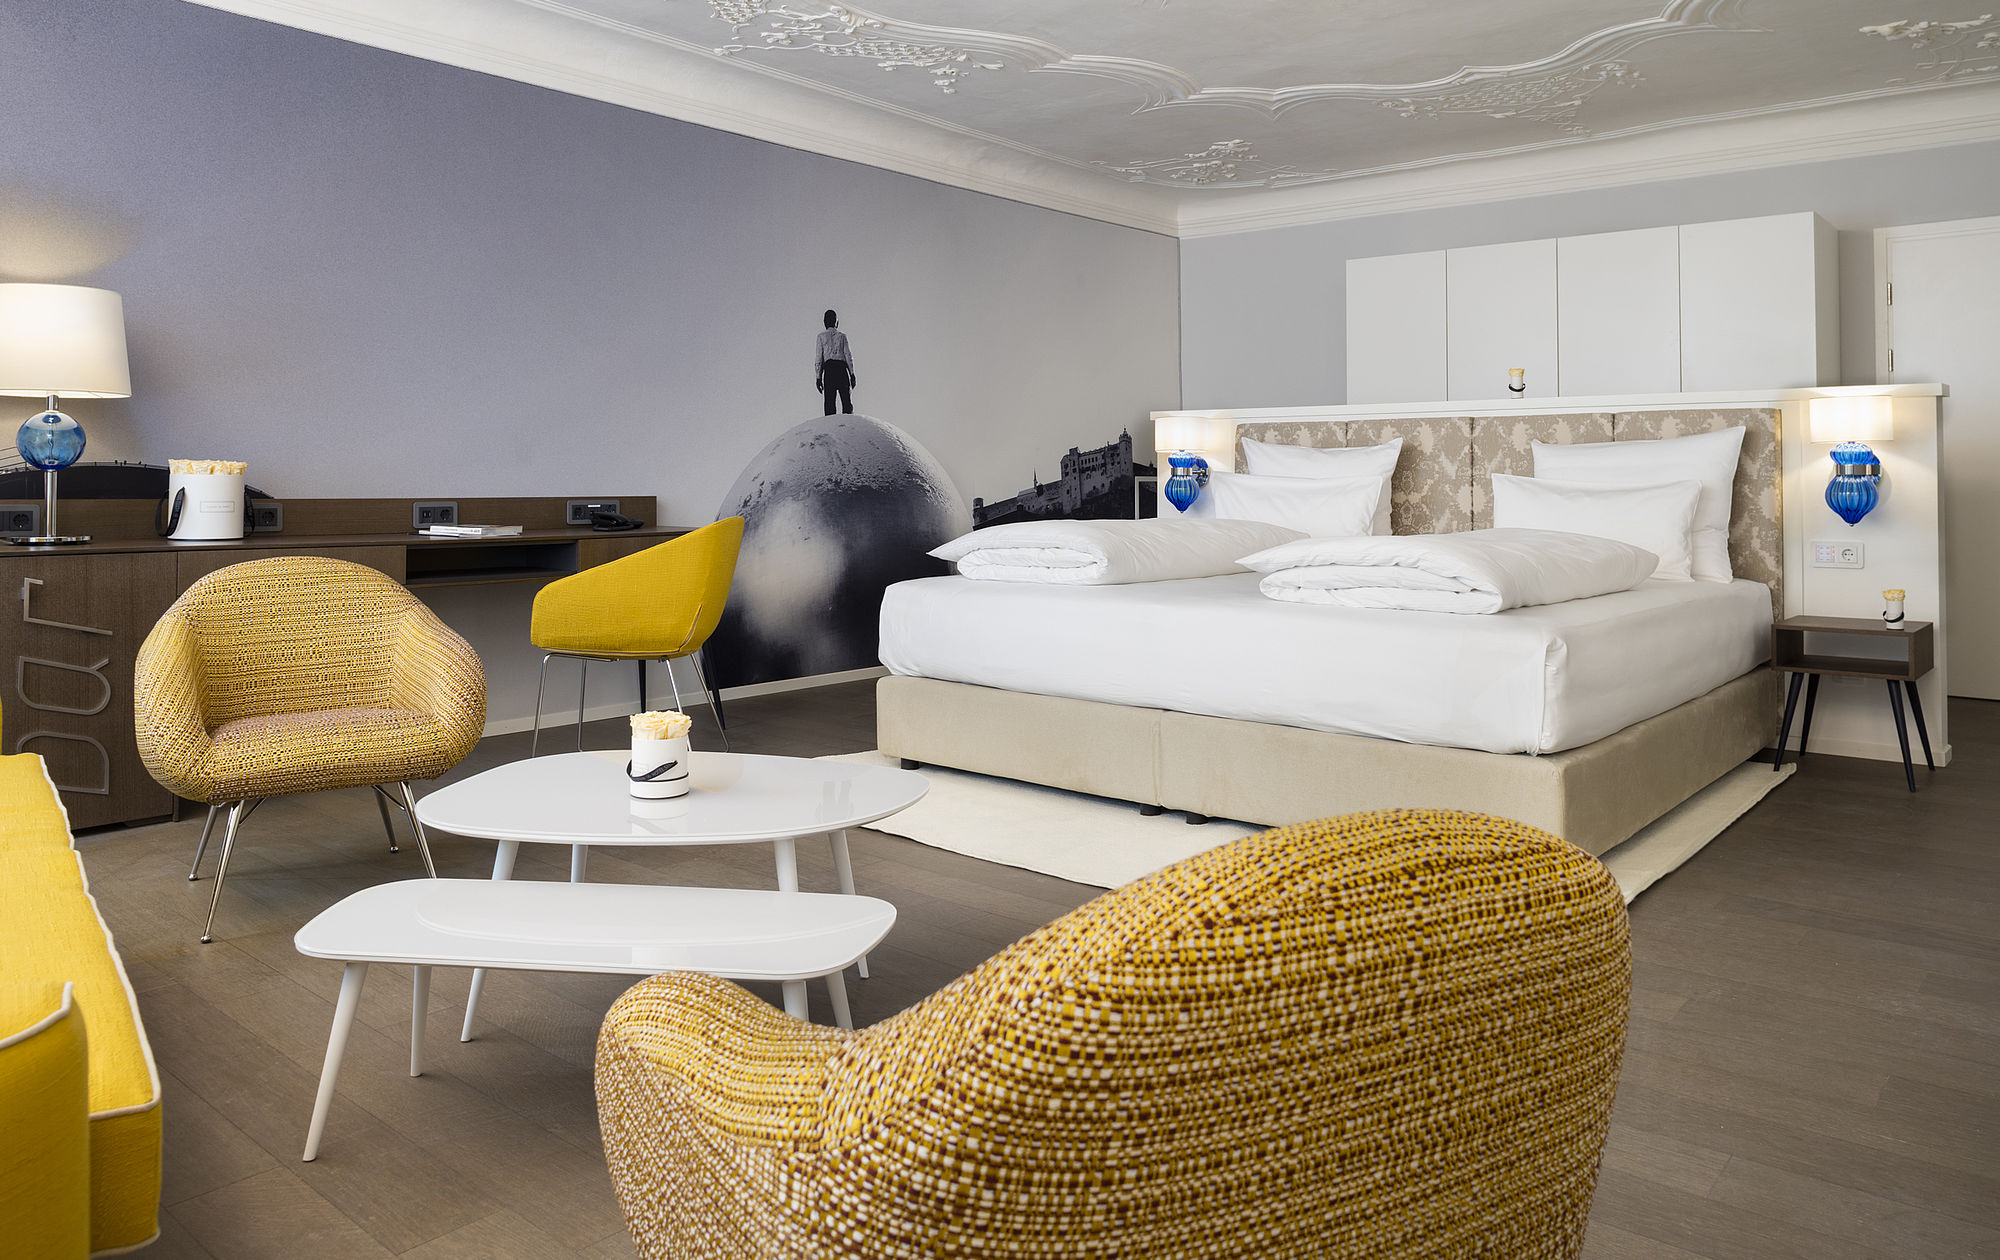 Das Schlafzimmer der Hotelsuite mit großem Boxspringbett, Sitzecke in Safran-Farben umgeben von möbeln im goldenen Design